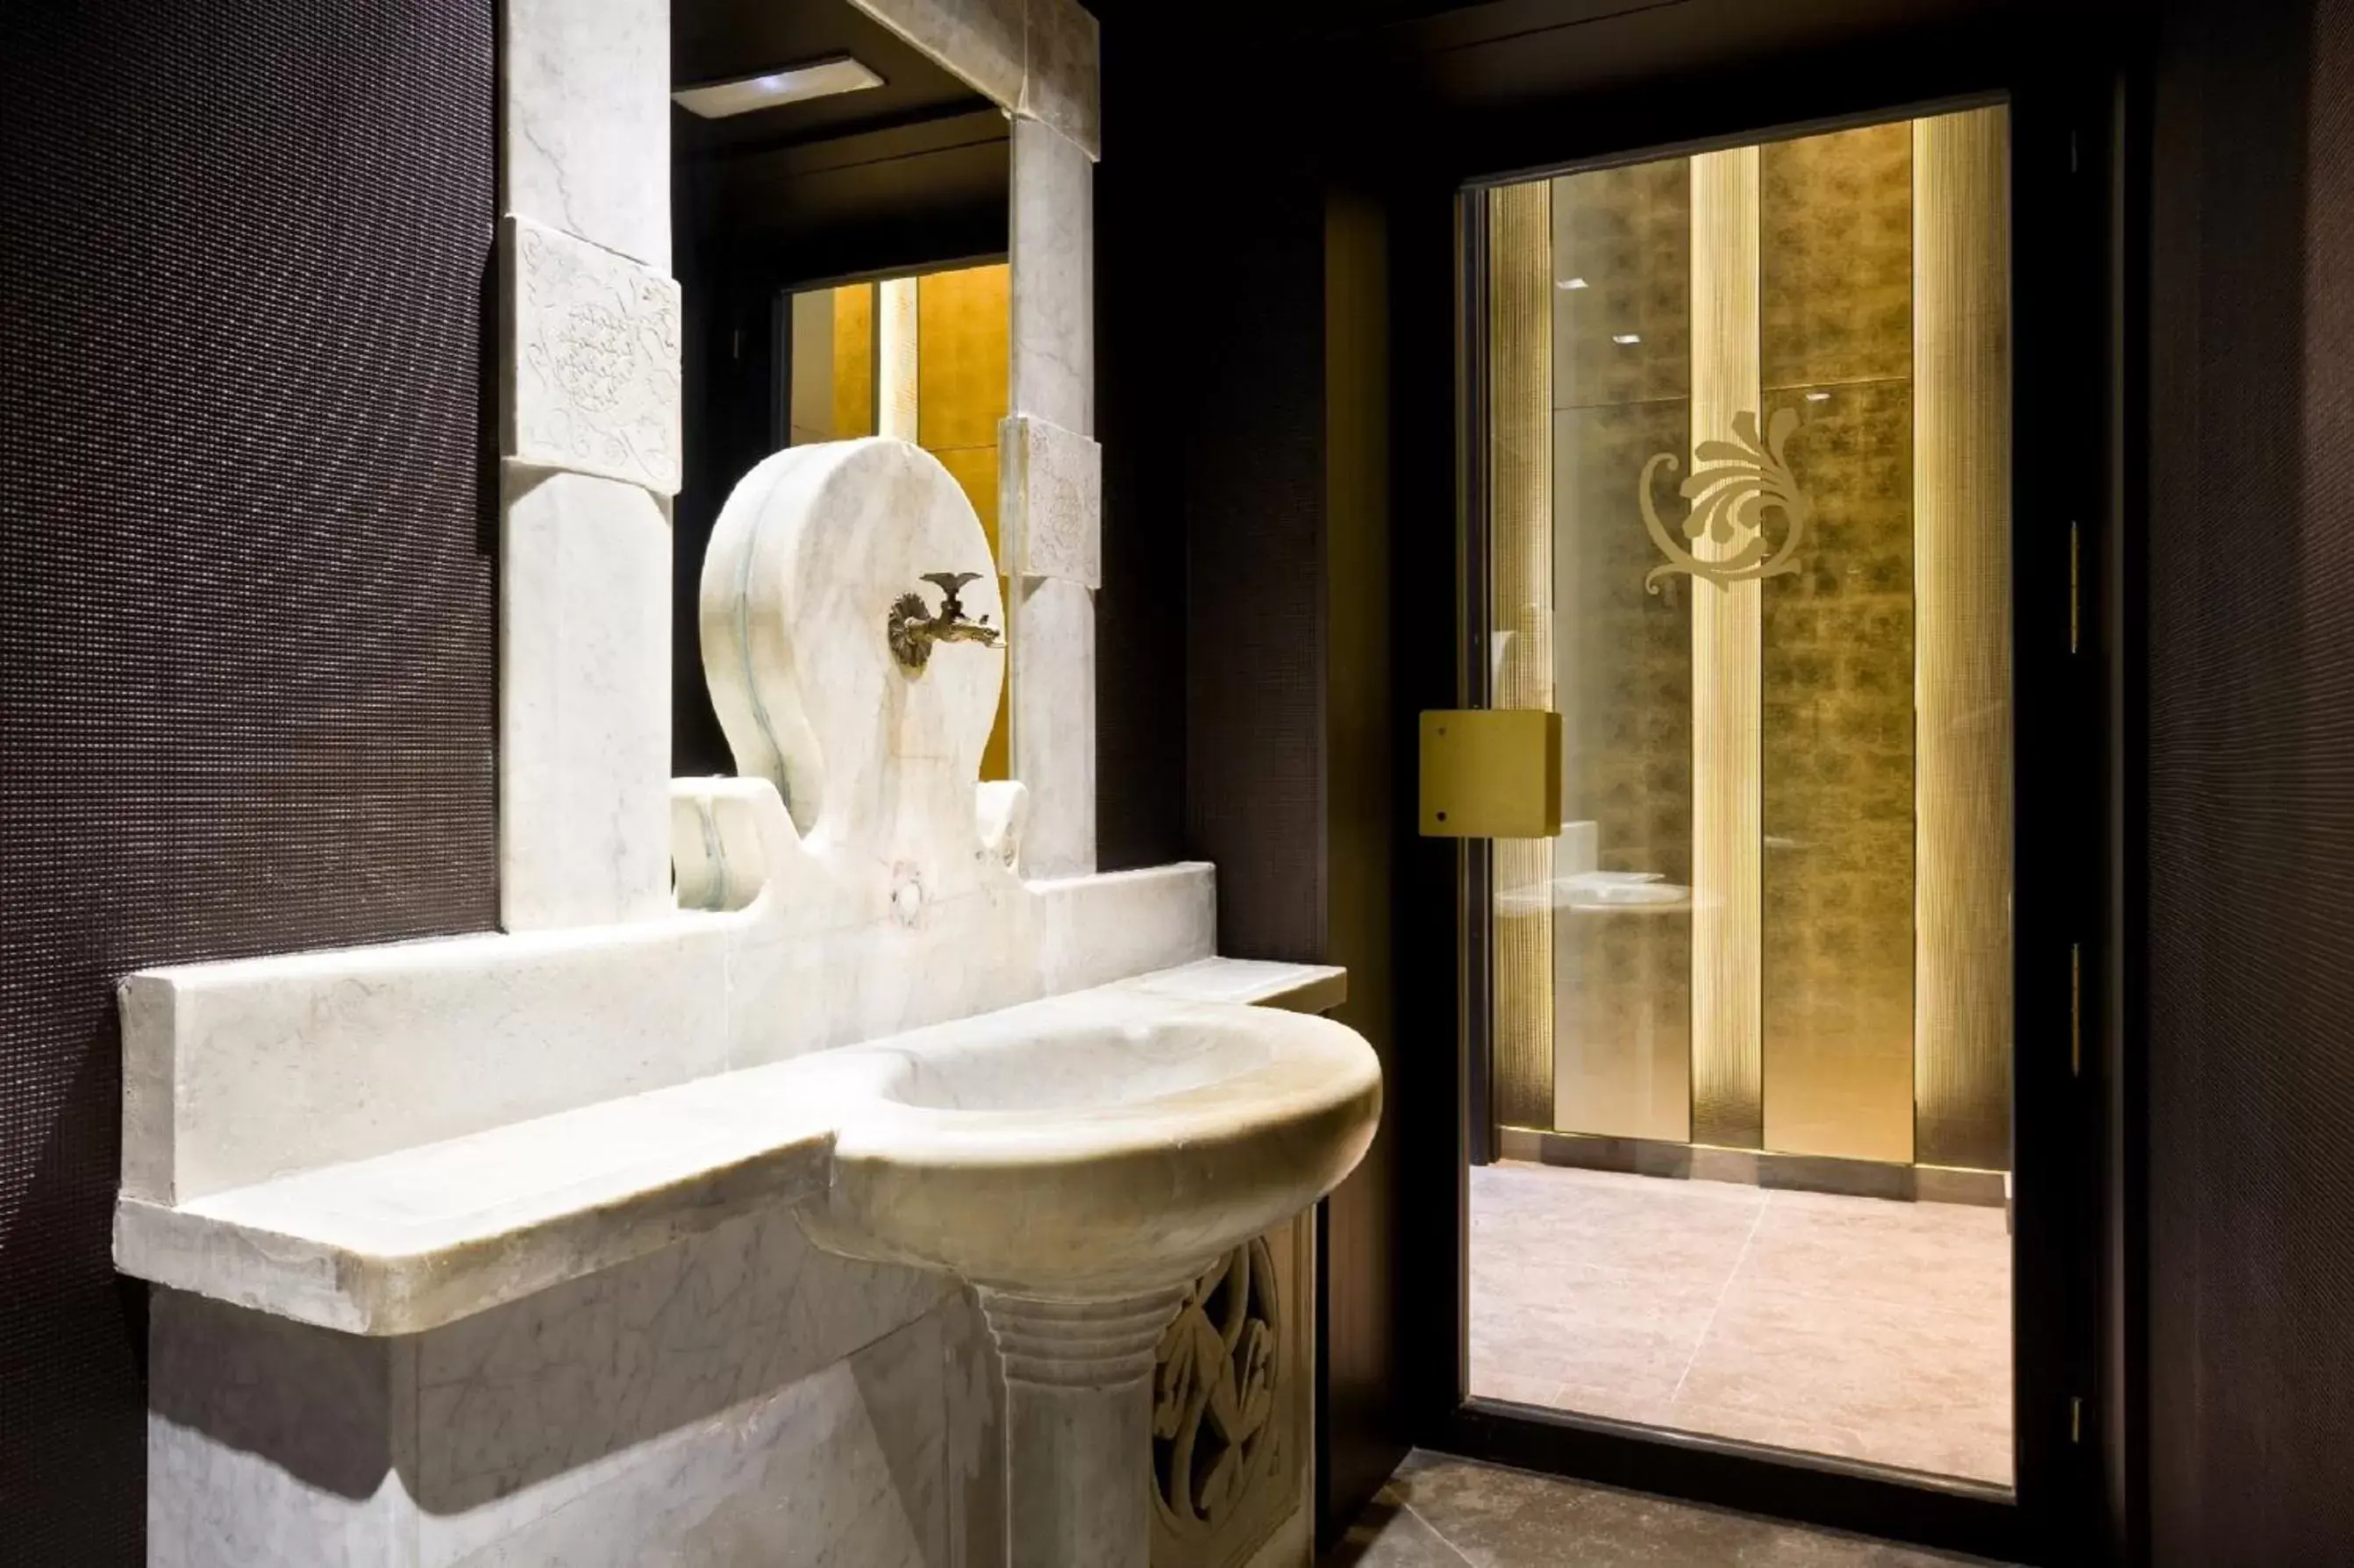 Decorative detail, Bathroom in Hotel España Ramblas